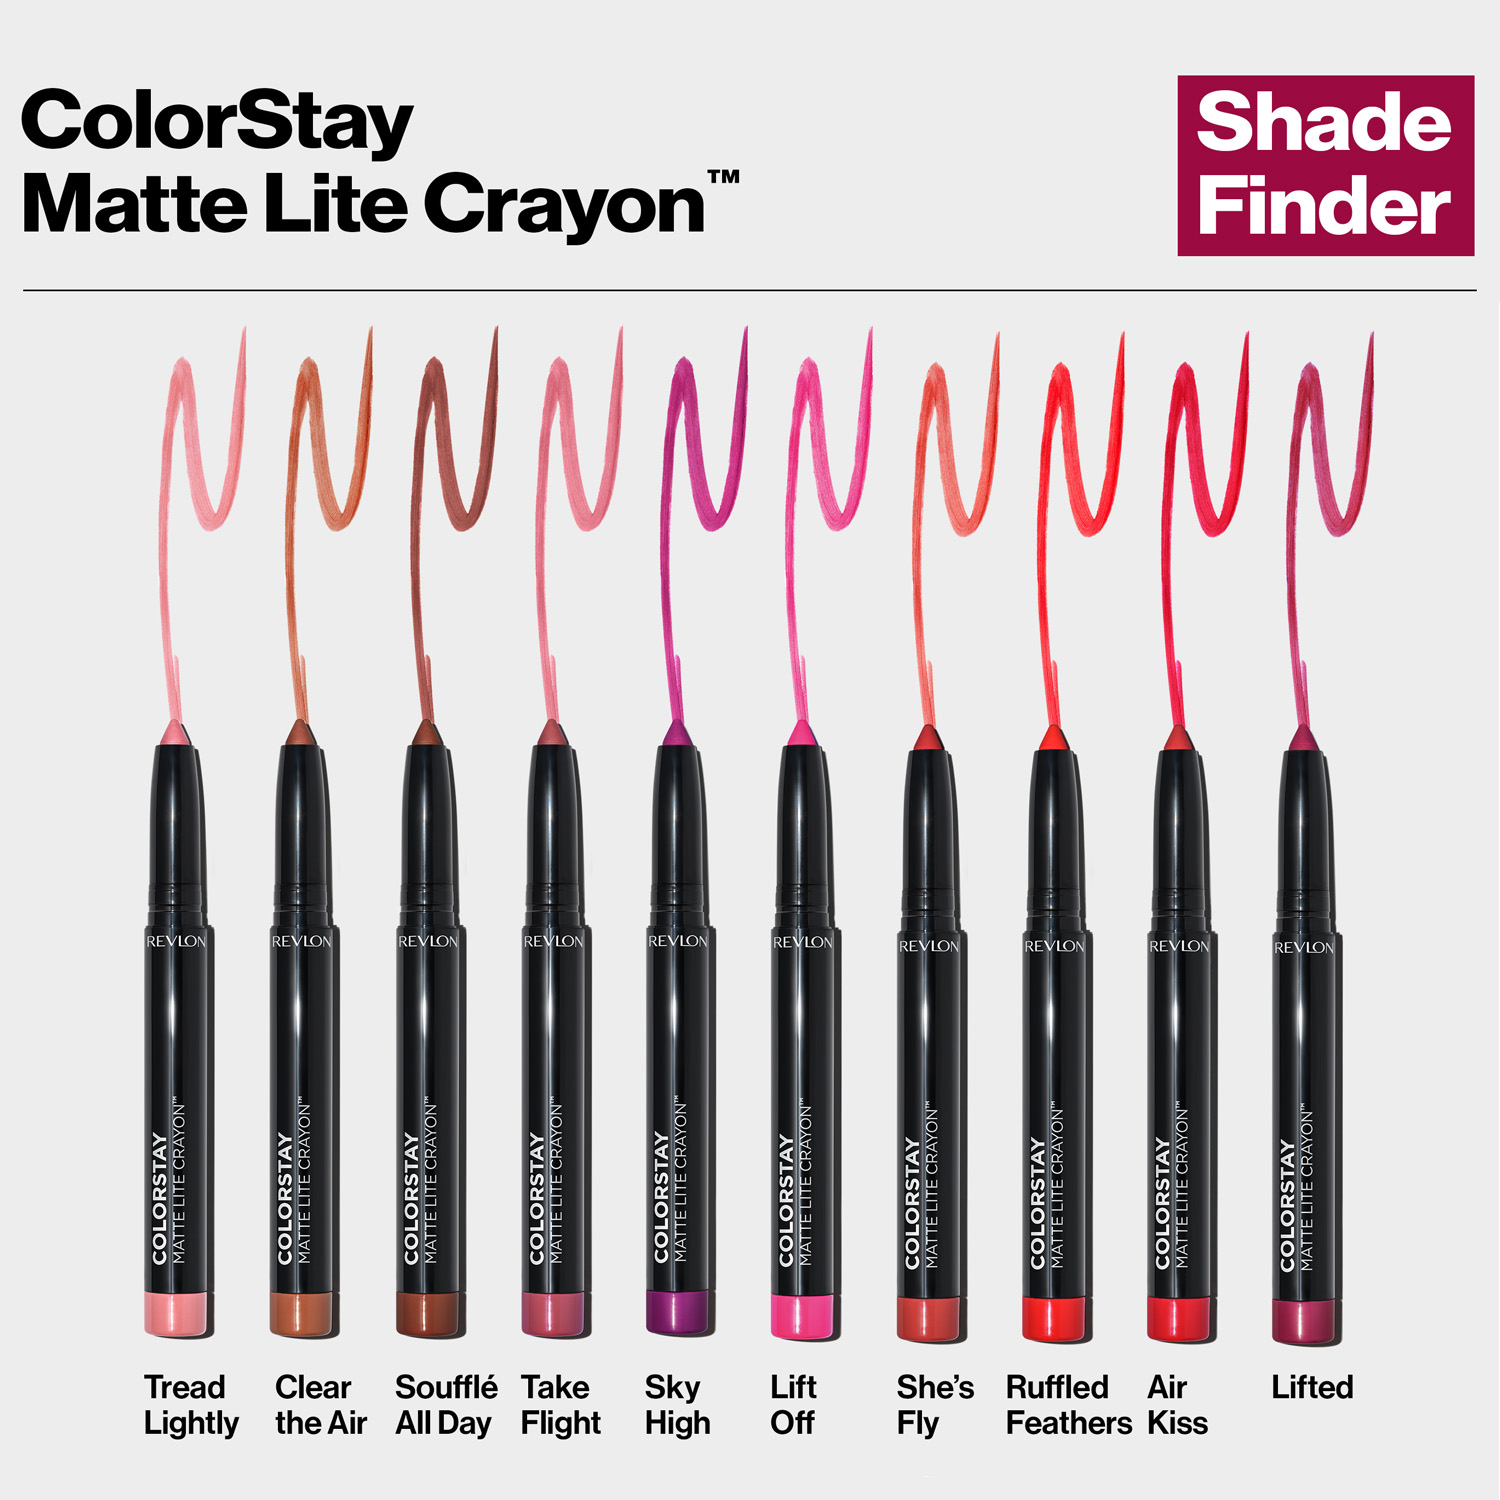  Revlon Launches ColorStay Matte Lite Crayon